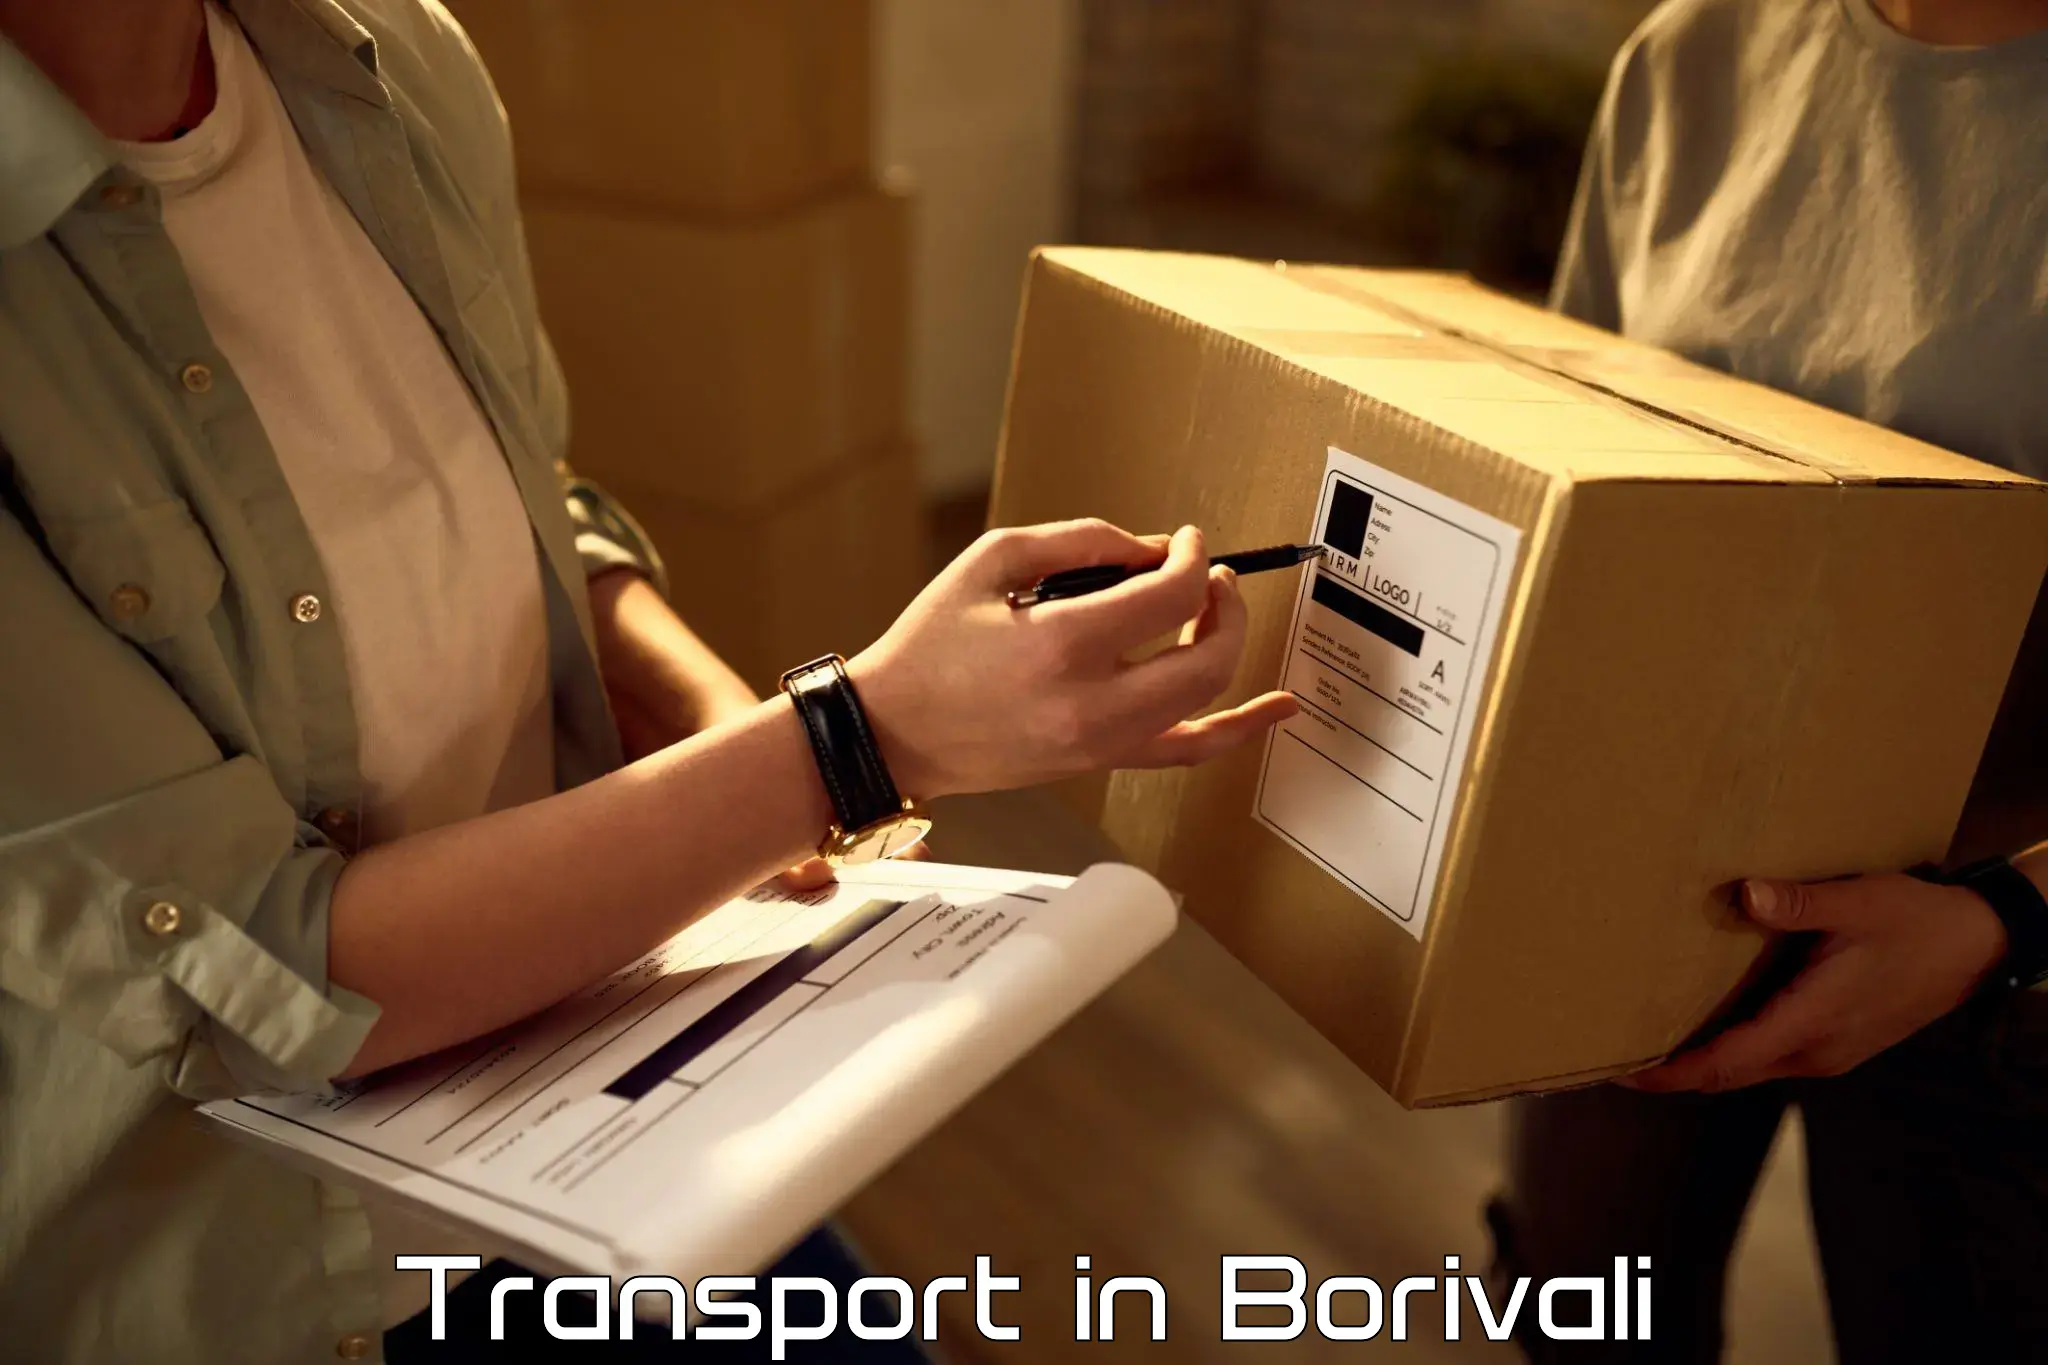 Road transport services in Borivali